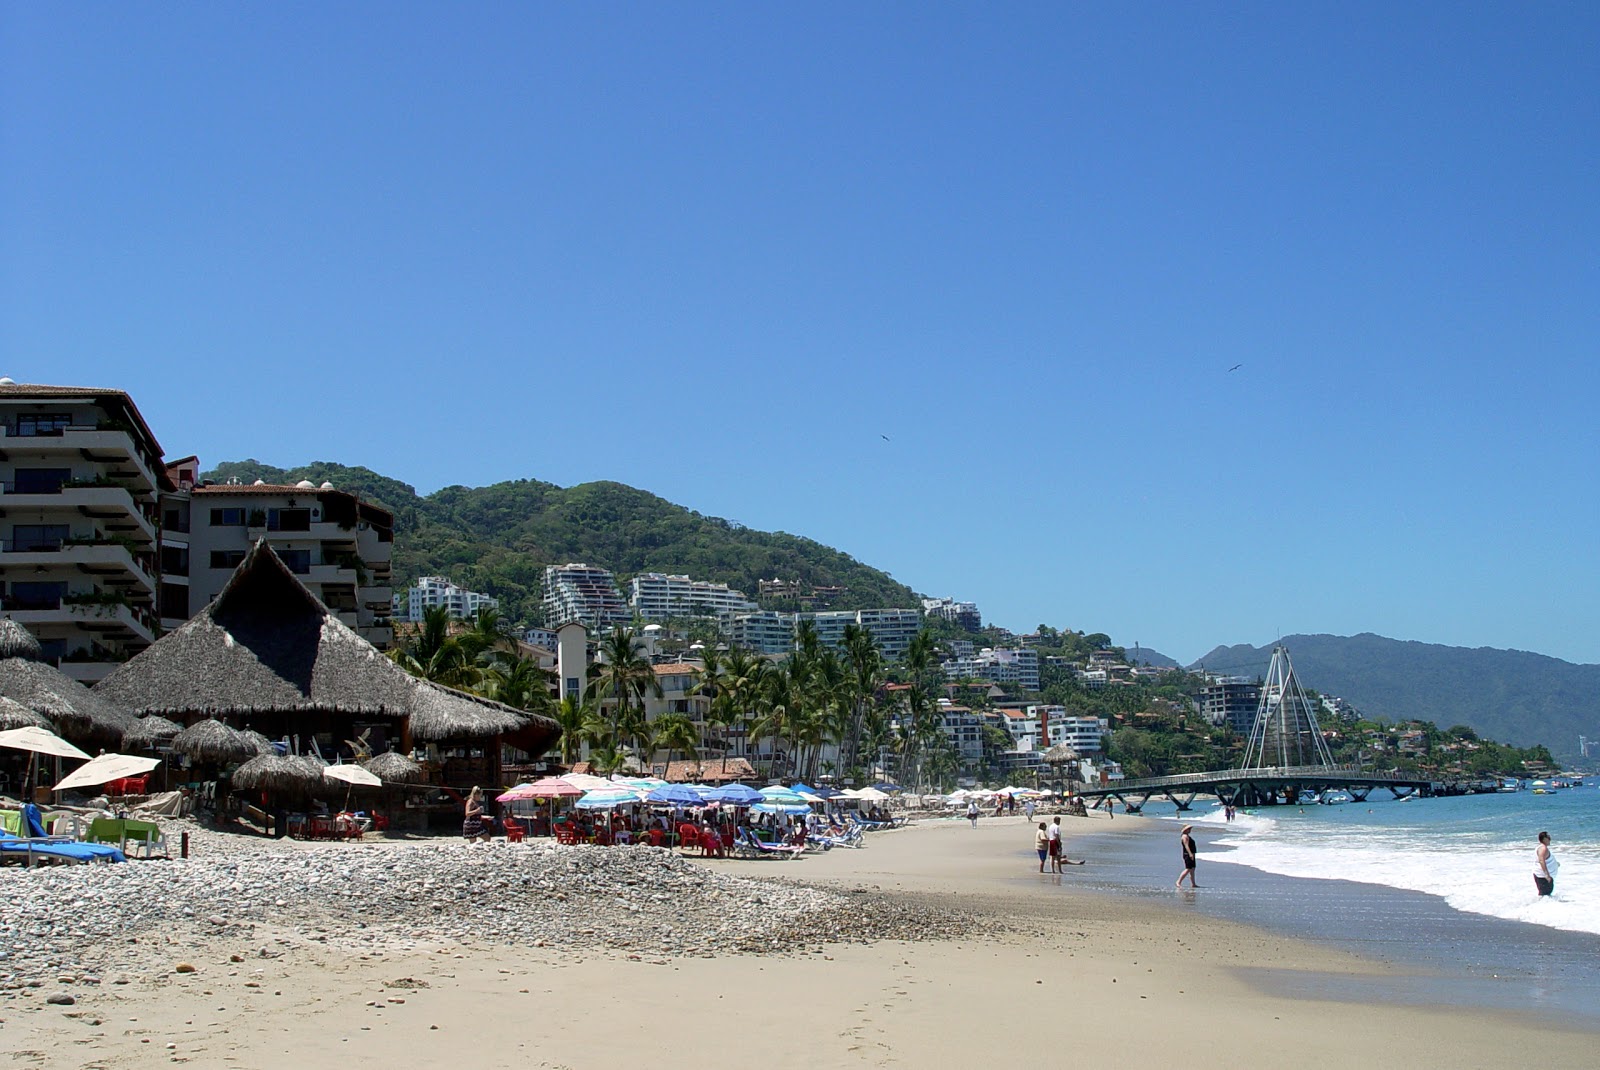 Foto de Olas Altas beach - lugar popular entre los conocedores del relax